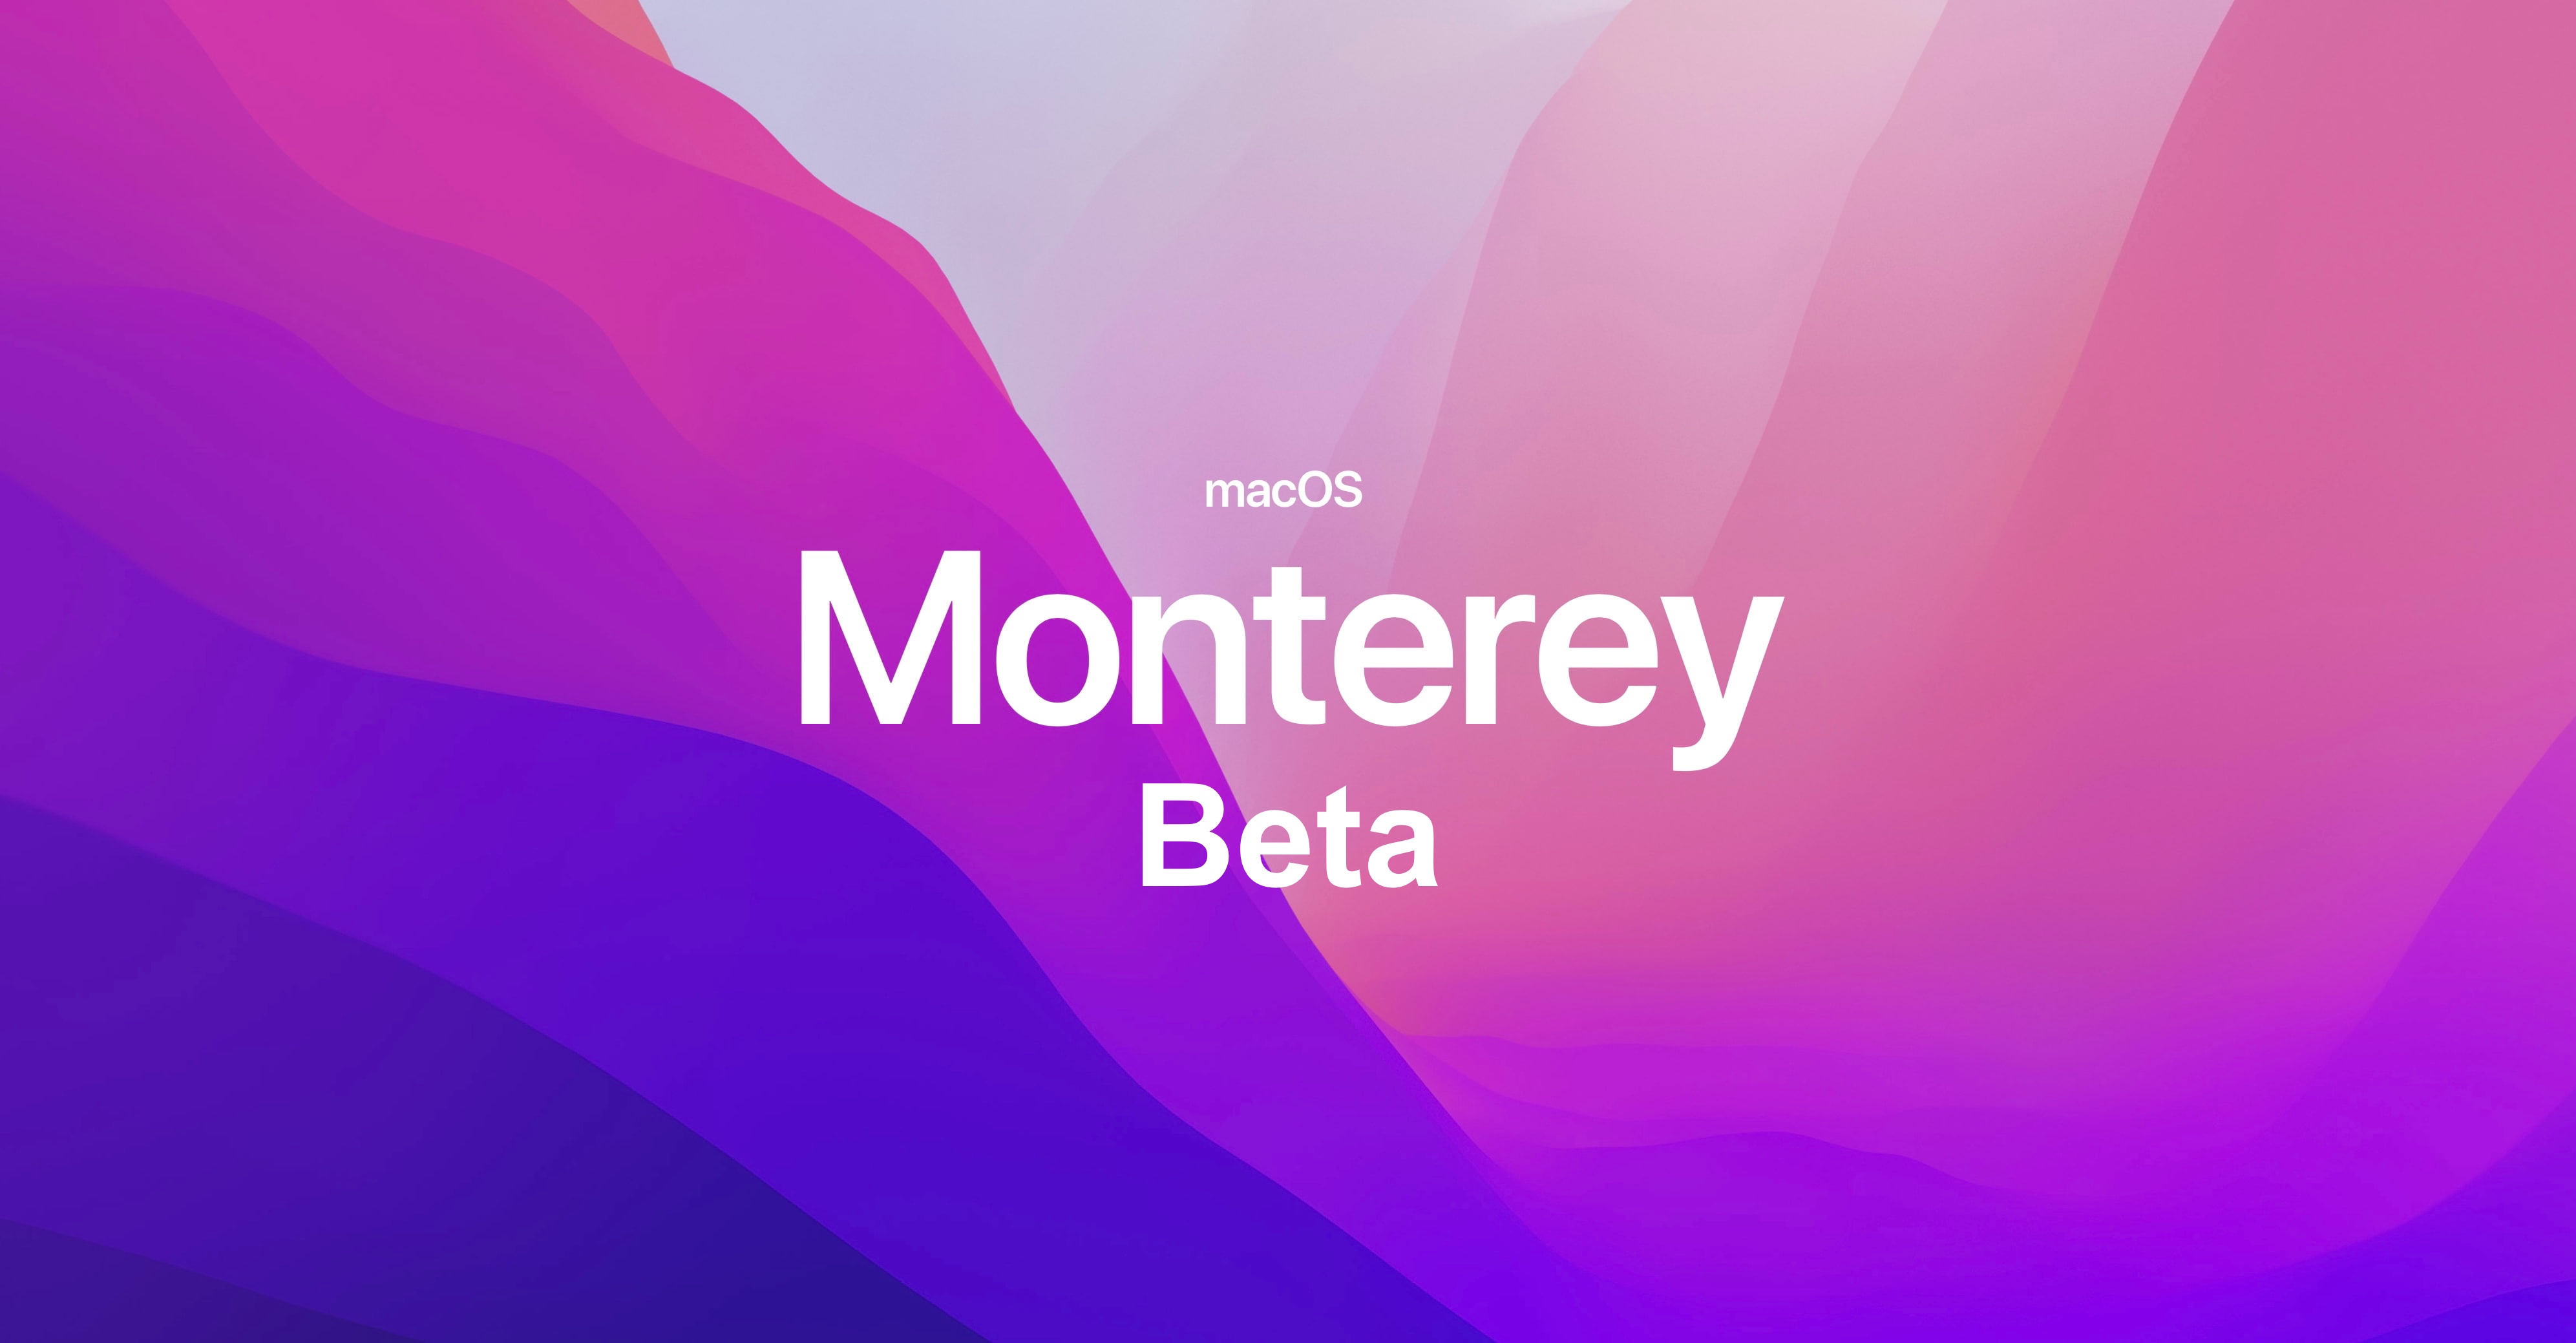 macOS Monterey beta